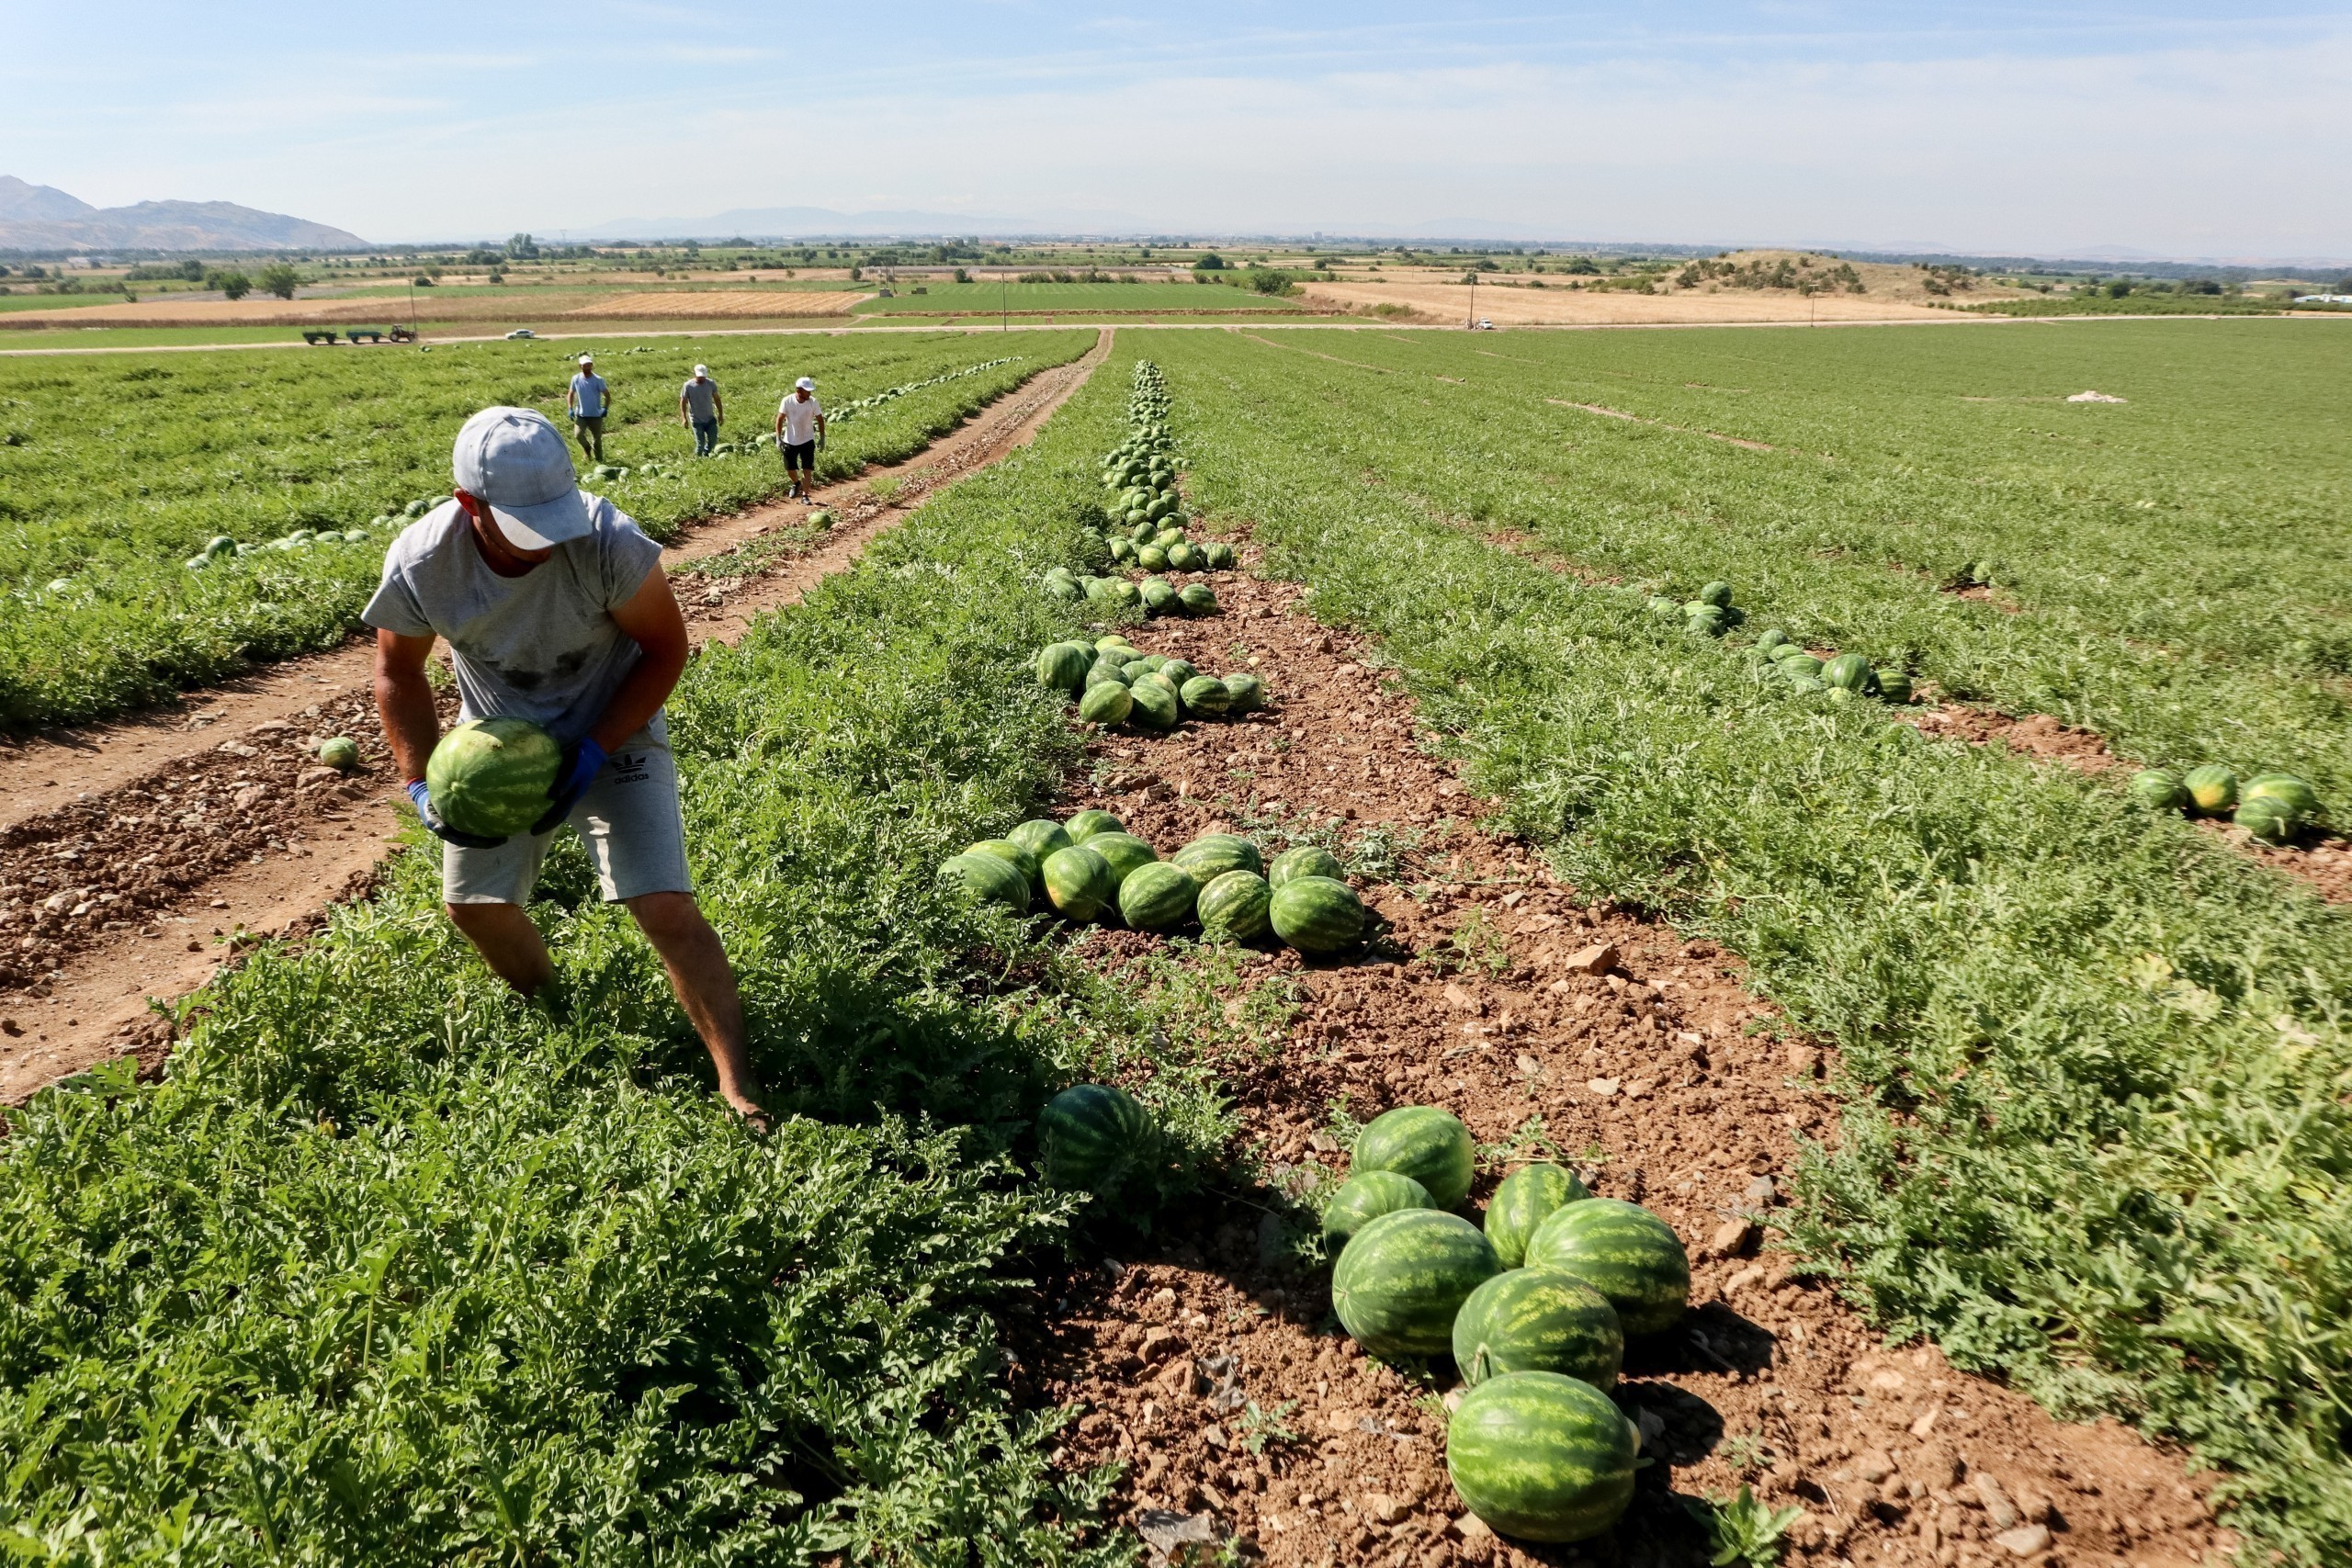 Aγροτικά προϊόντα: Ελλειμματικό για τους πρώτους επτά μήνες του 2022 το εμπορικό ισοζύγιο | Ειδήσεις για την Οικονομία